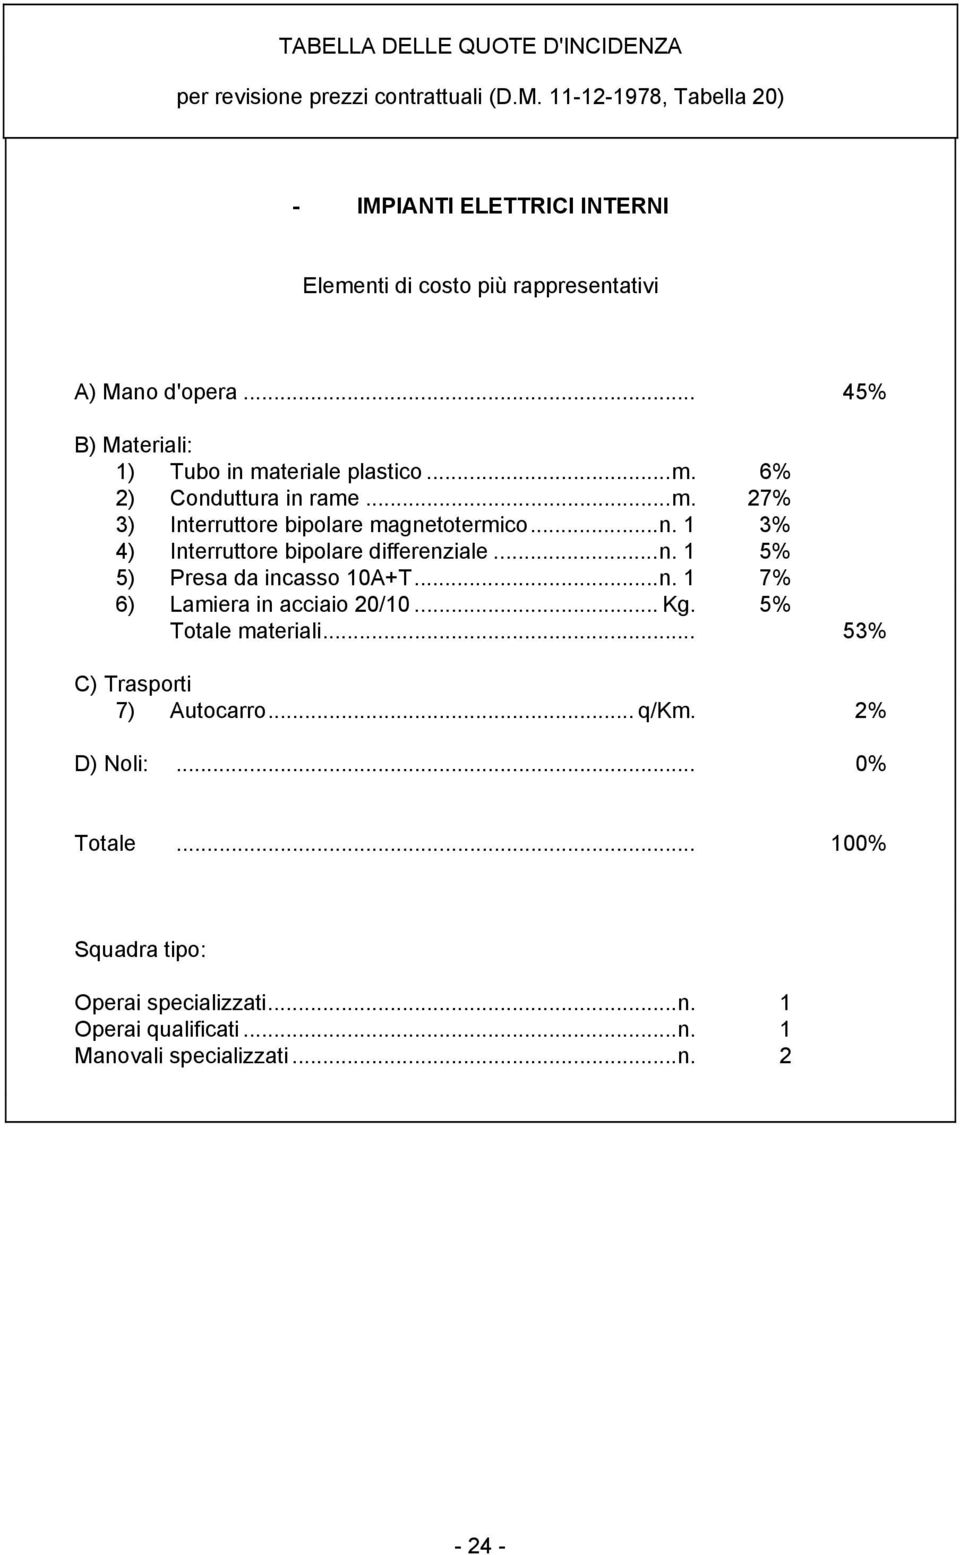 ..m. 6% 2) Conduttura in rame...m. 27% 3) Interruttore bipolare magnetotermico...n. 1 3% 4) Interruttore bipolare differenziale...n. 1 5% 5) Presa da incasso 10A+T.